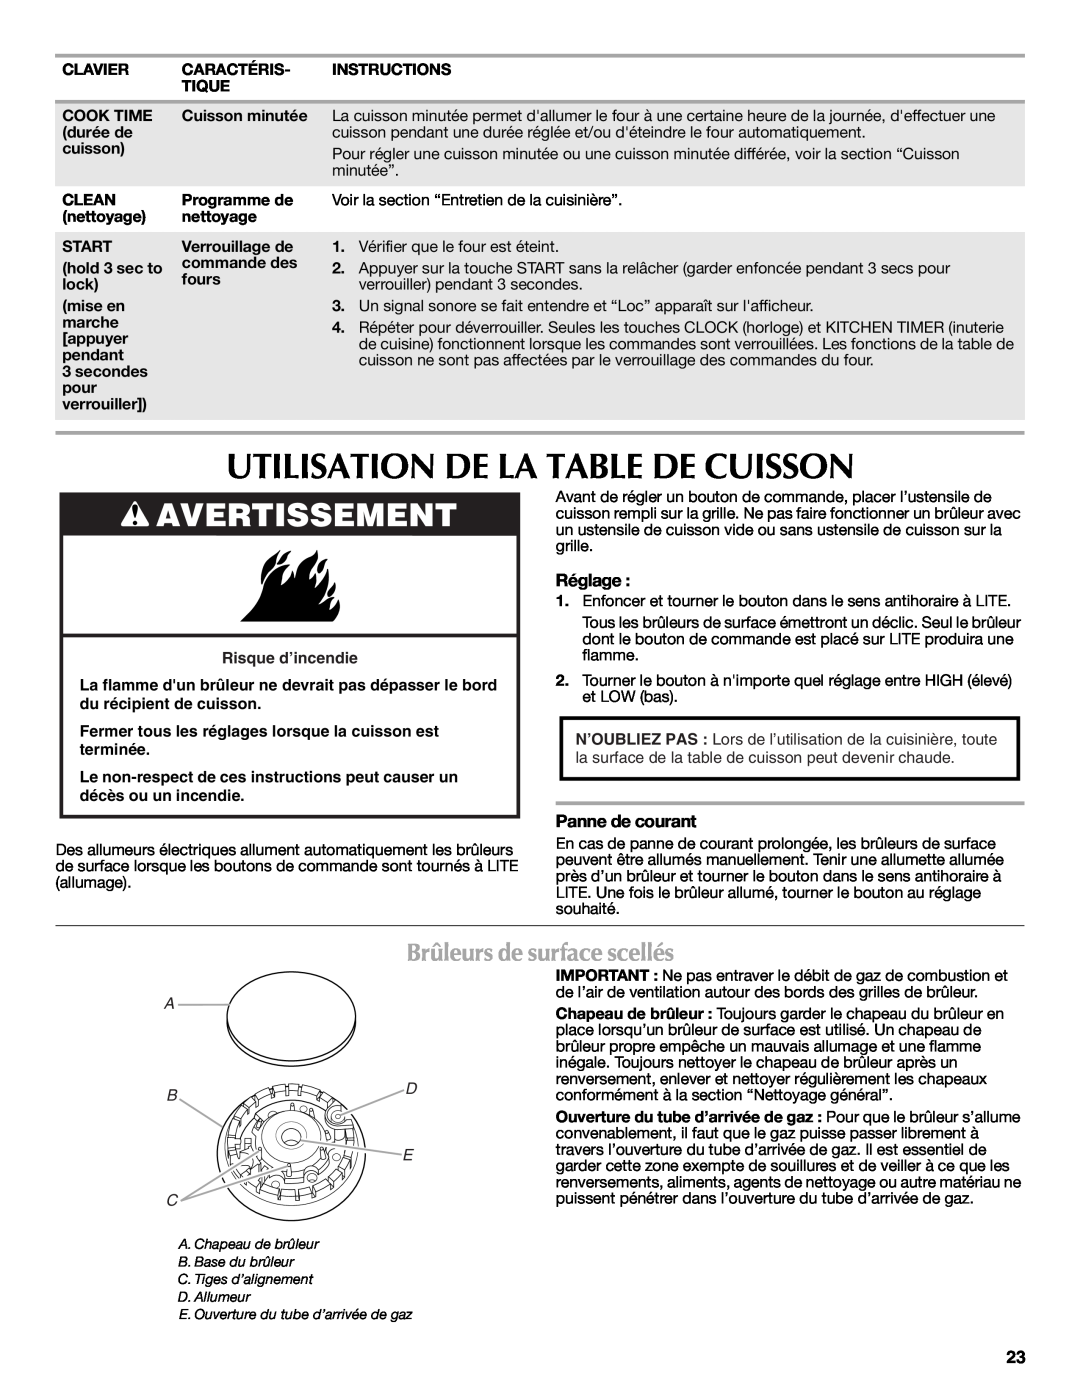 Maytag W10399029B warranty Utilisation De La Table De Cuisson, Brûleurs de surface scellés, Avertissement, A B D E C 